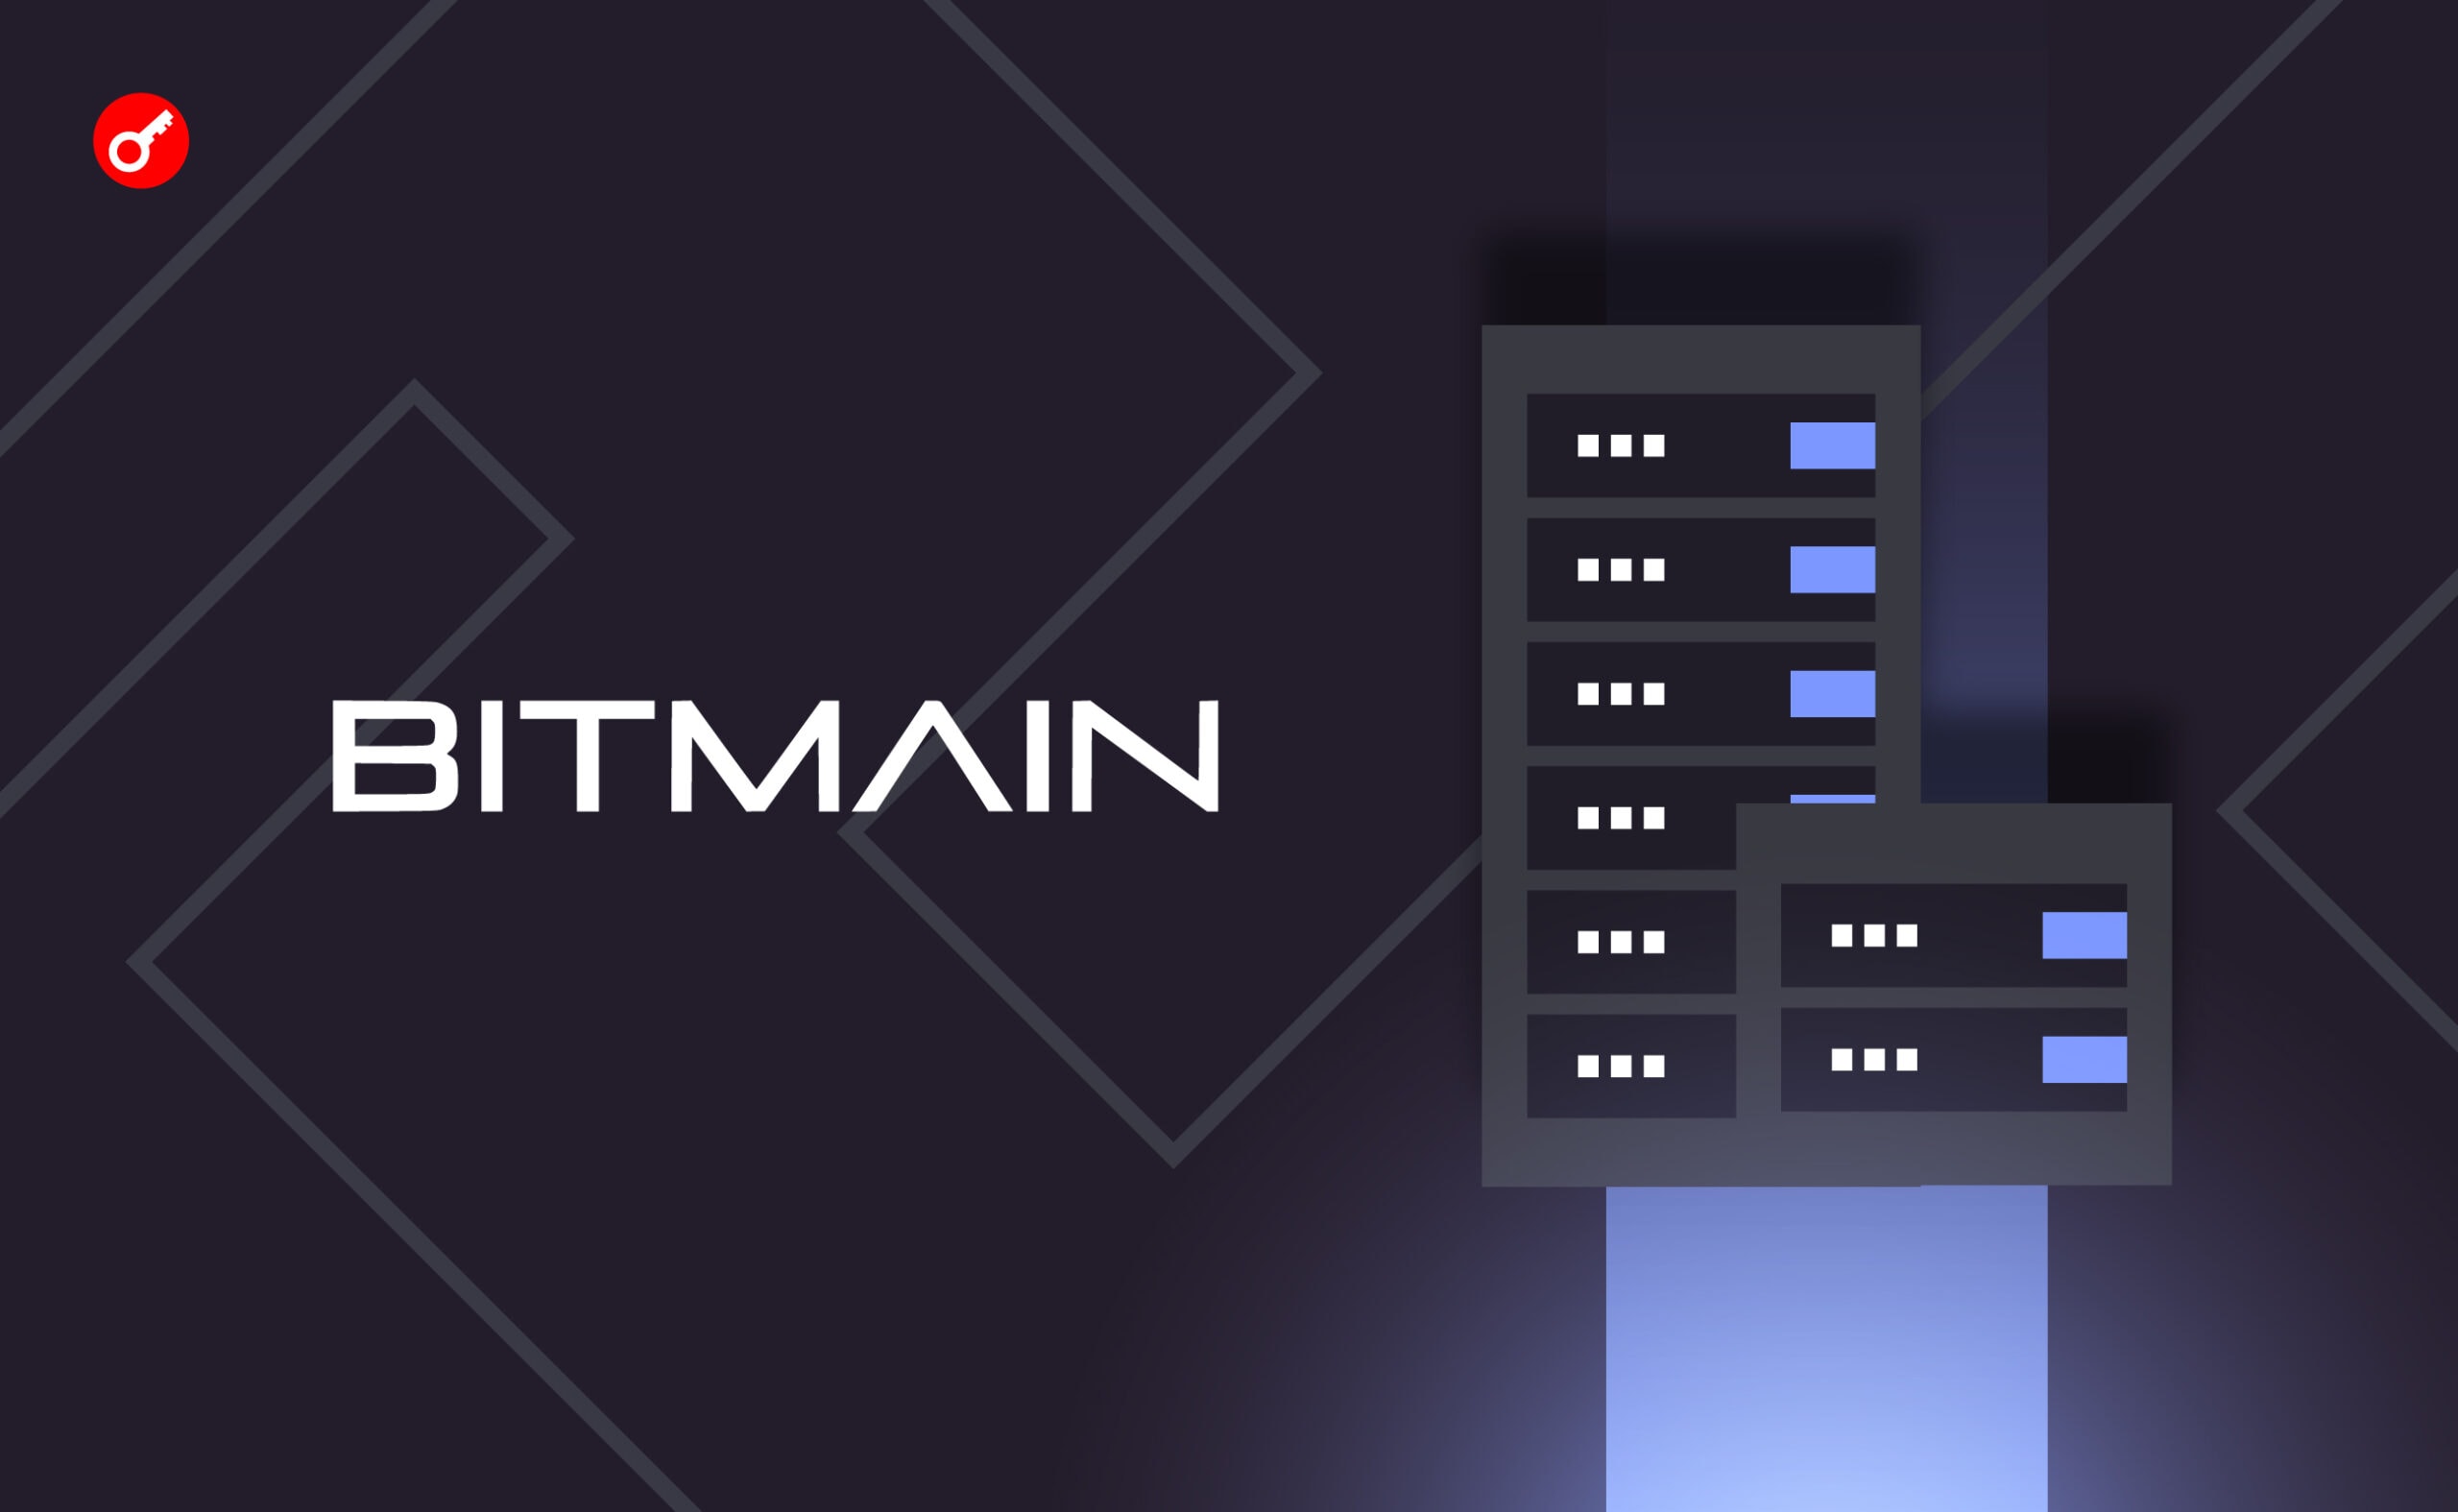 Bitmain представил самый мощный биткоин-майнер — S21 Antminer. Заглавный коллаж новости.